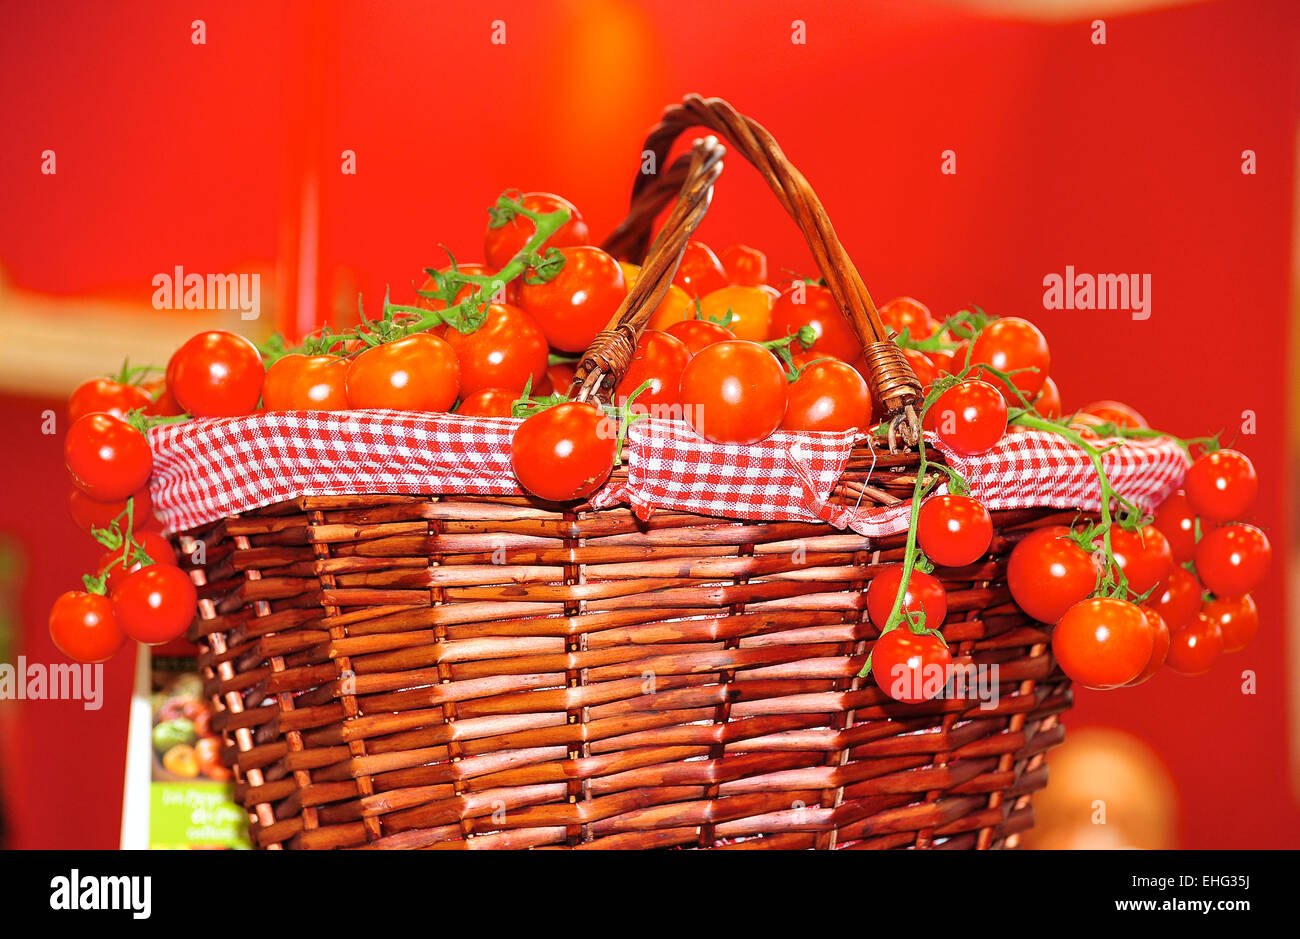 Rote Tomaten in einem geflechteten Korb Stock Photo